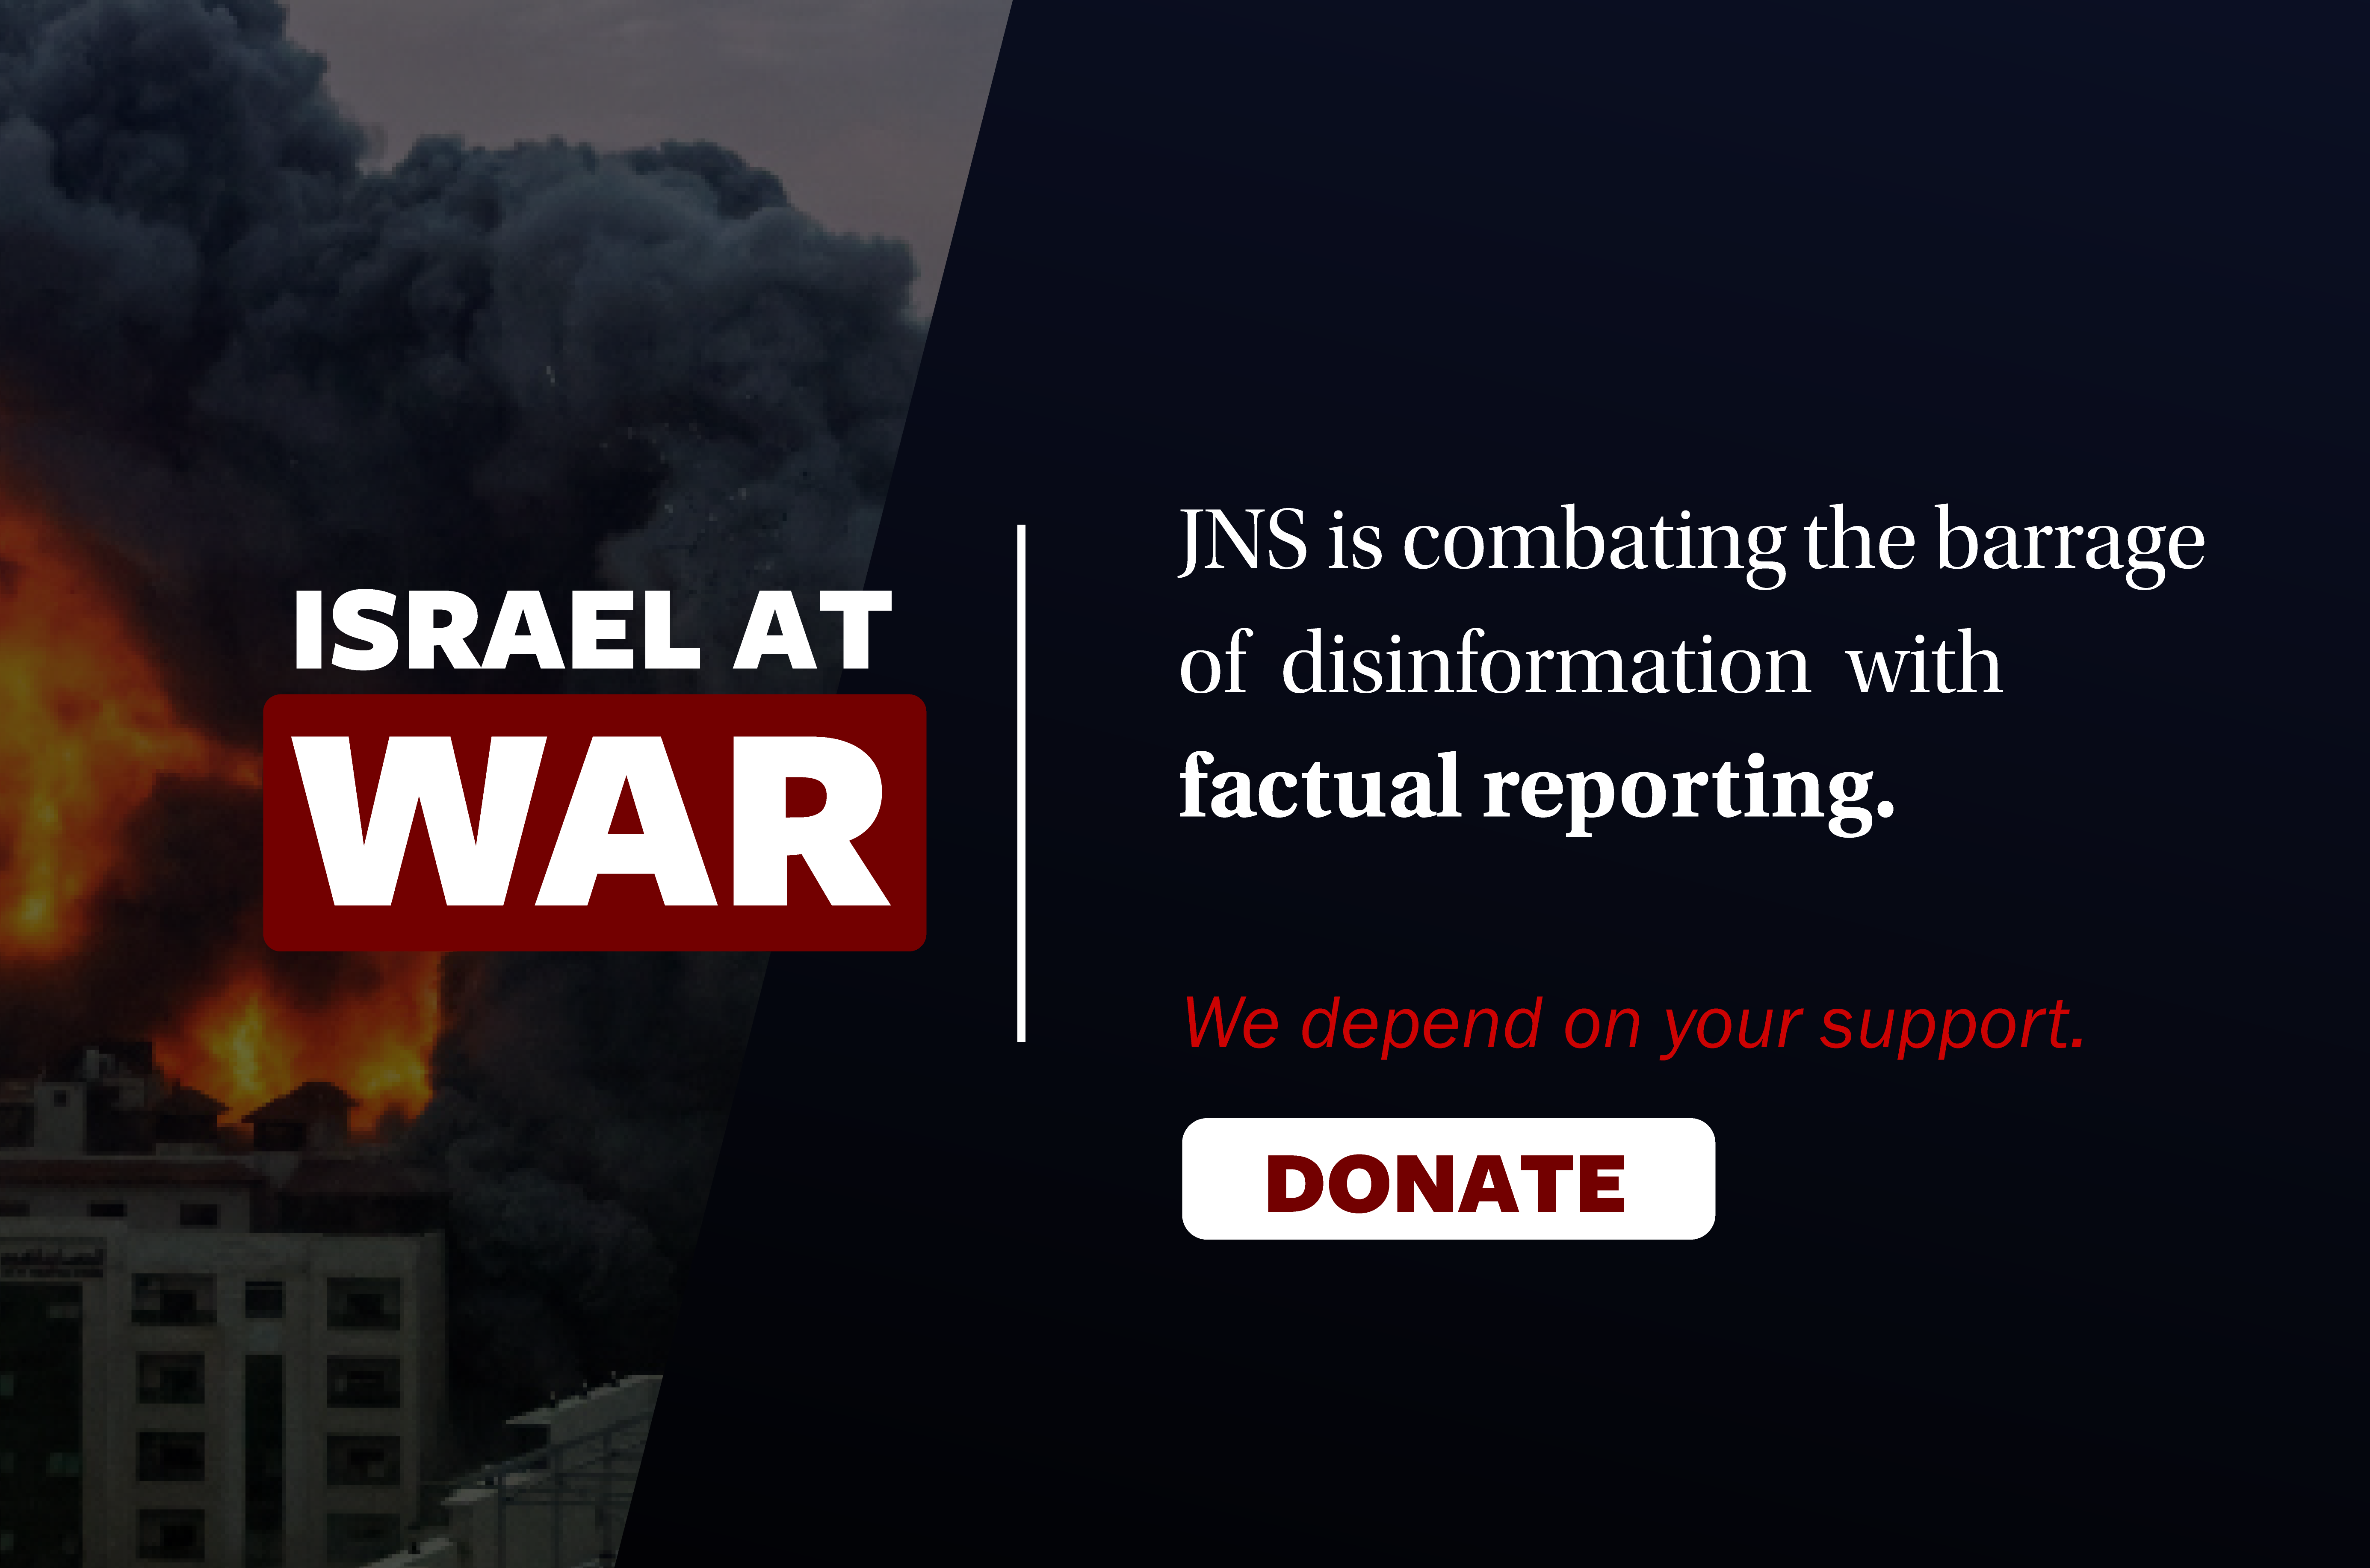 Israel_at_war_donate_banner